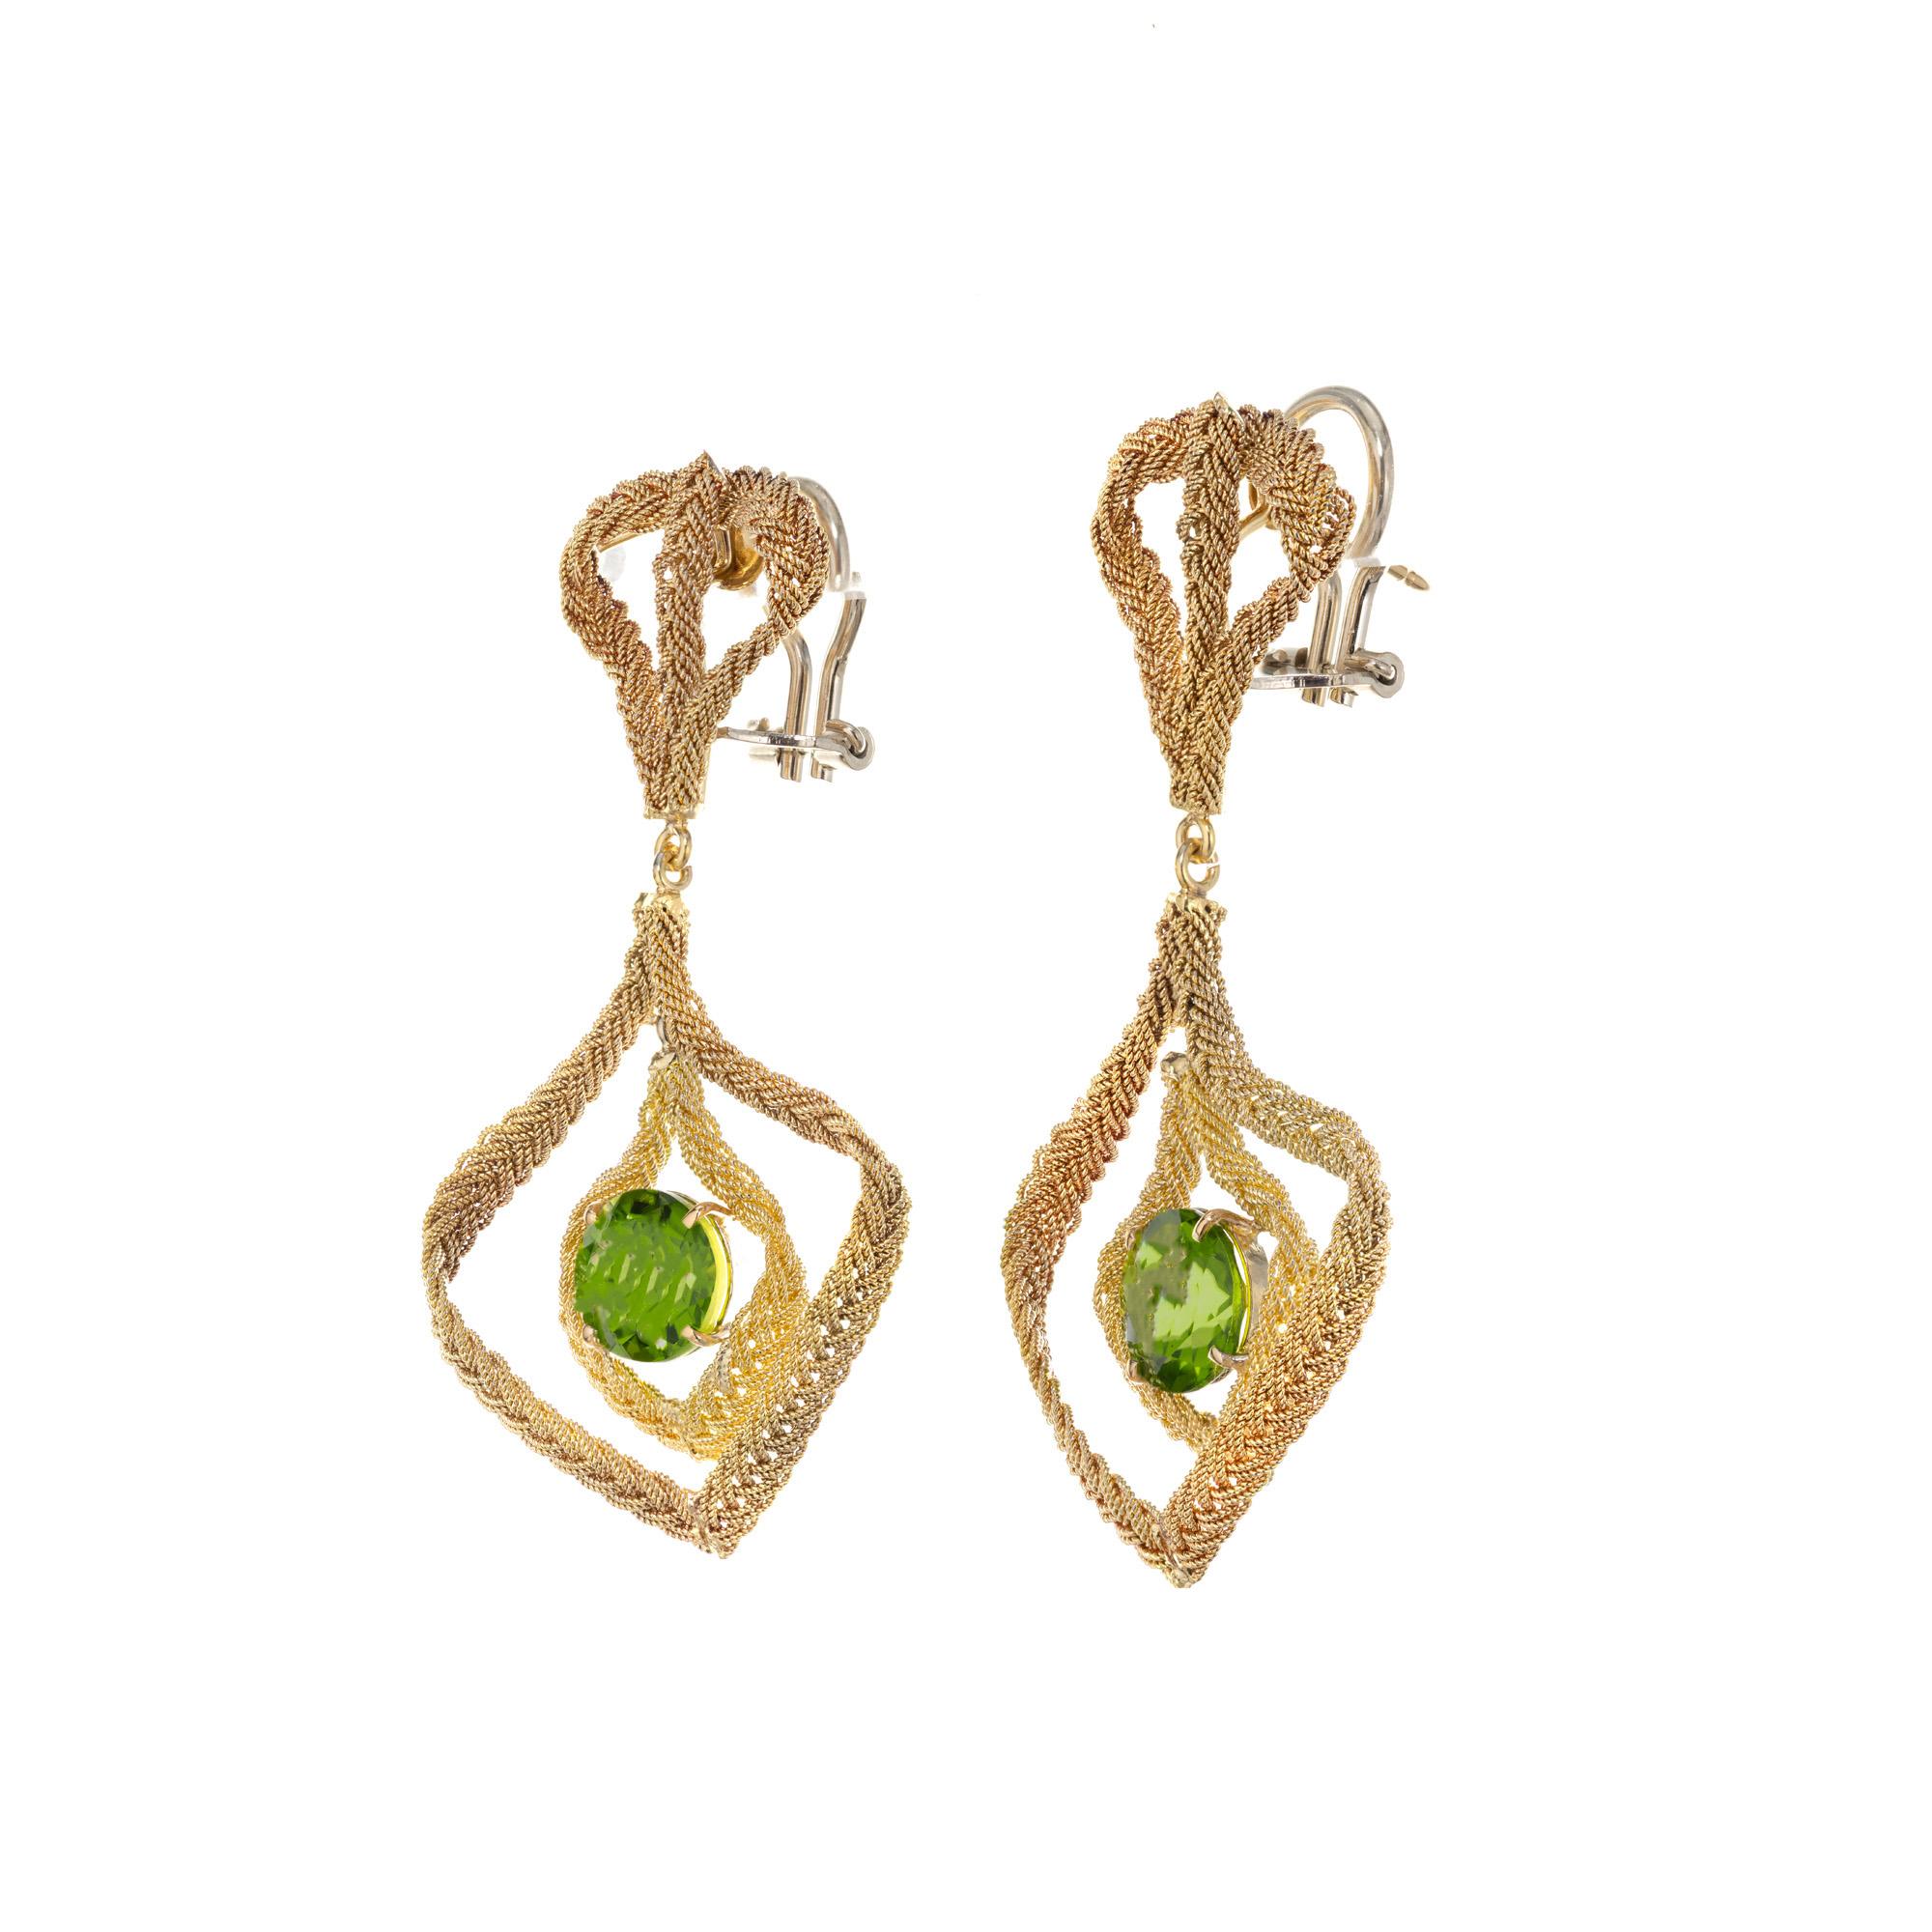 Peridot-Ohrringe mit Baumeln. Zwei runde Peridot Edelsteine in 18k Gelbgold Hand gewebt italienischen Clip Post baumeln, Kronleuchter Ohrringe gesetzt. Obwohl diese Ohrringe sehr groß sind, sind sie leicht und angenehm zu tragen. 

2 runde grüne